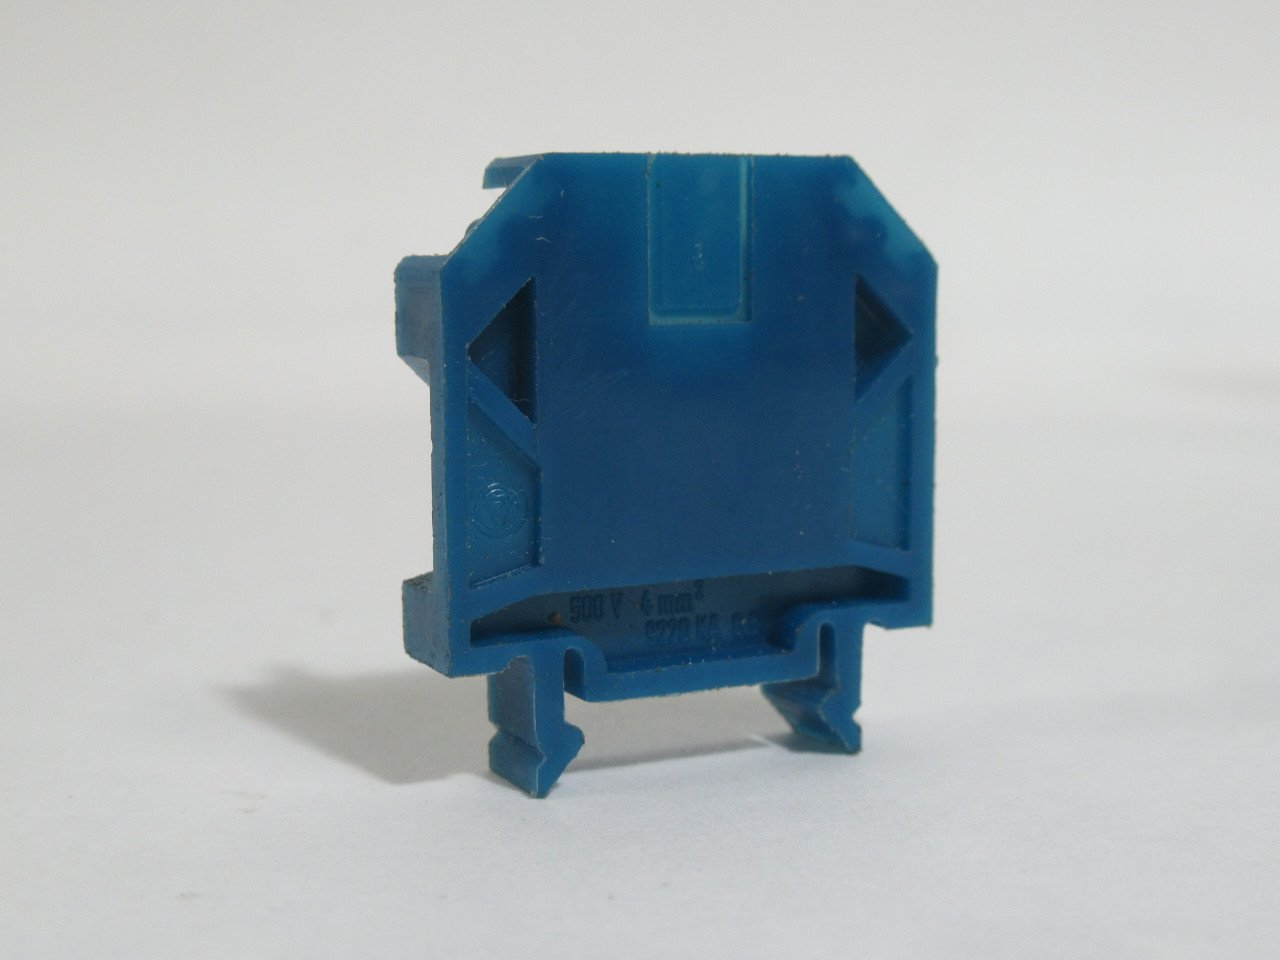 Wieland 9220-KA-6.6-B Blue Mini Terminal Block 500V 4mm2 Lot of 20 USED